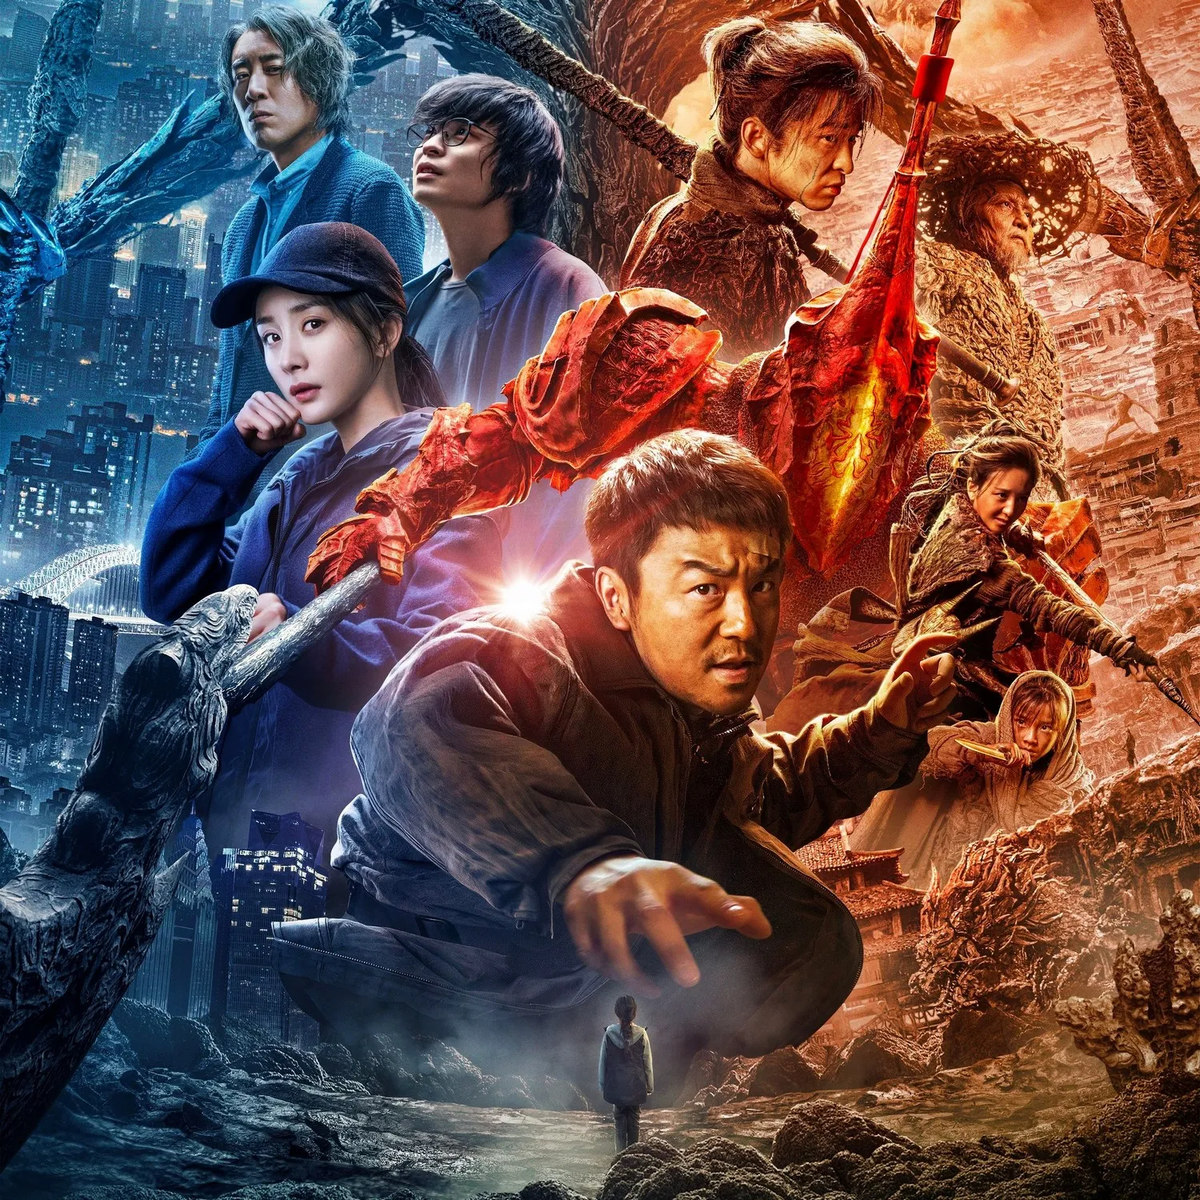  Всем привет сегодня у меня подборка крутых развлекательных фильмов фэнтези. Приятного просмотра! 1) Ассасин: Битва миров         2021 Ci sha xiao shuo jia  Гениальный, красивейший фильм.